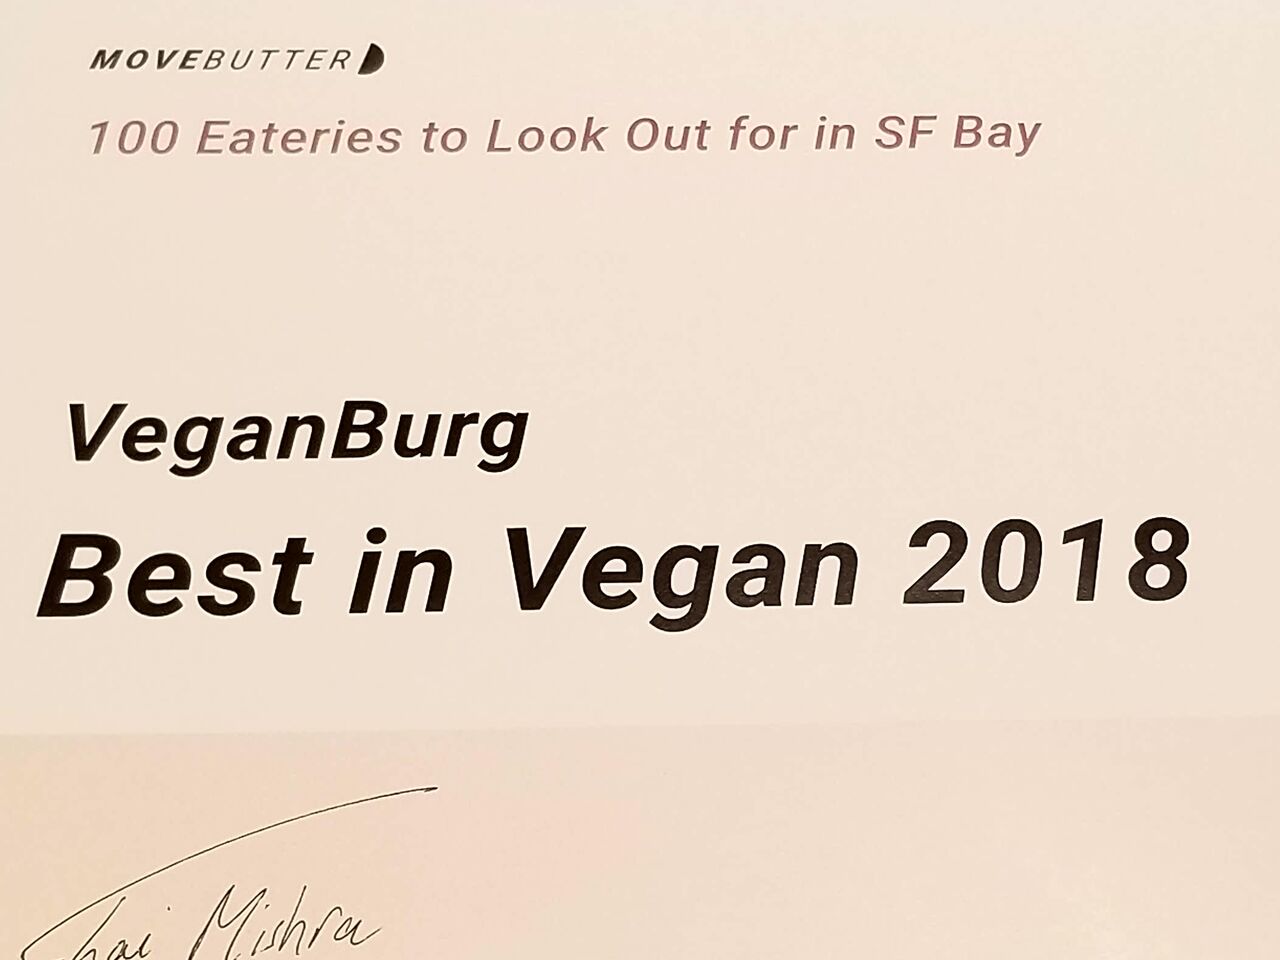 A photo of VeganBurg